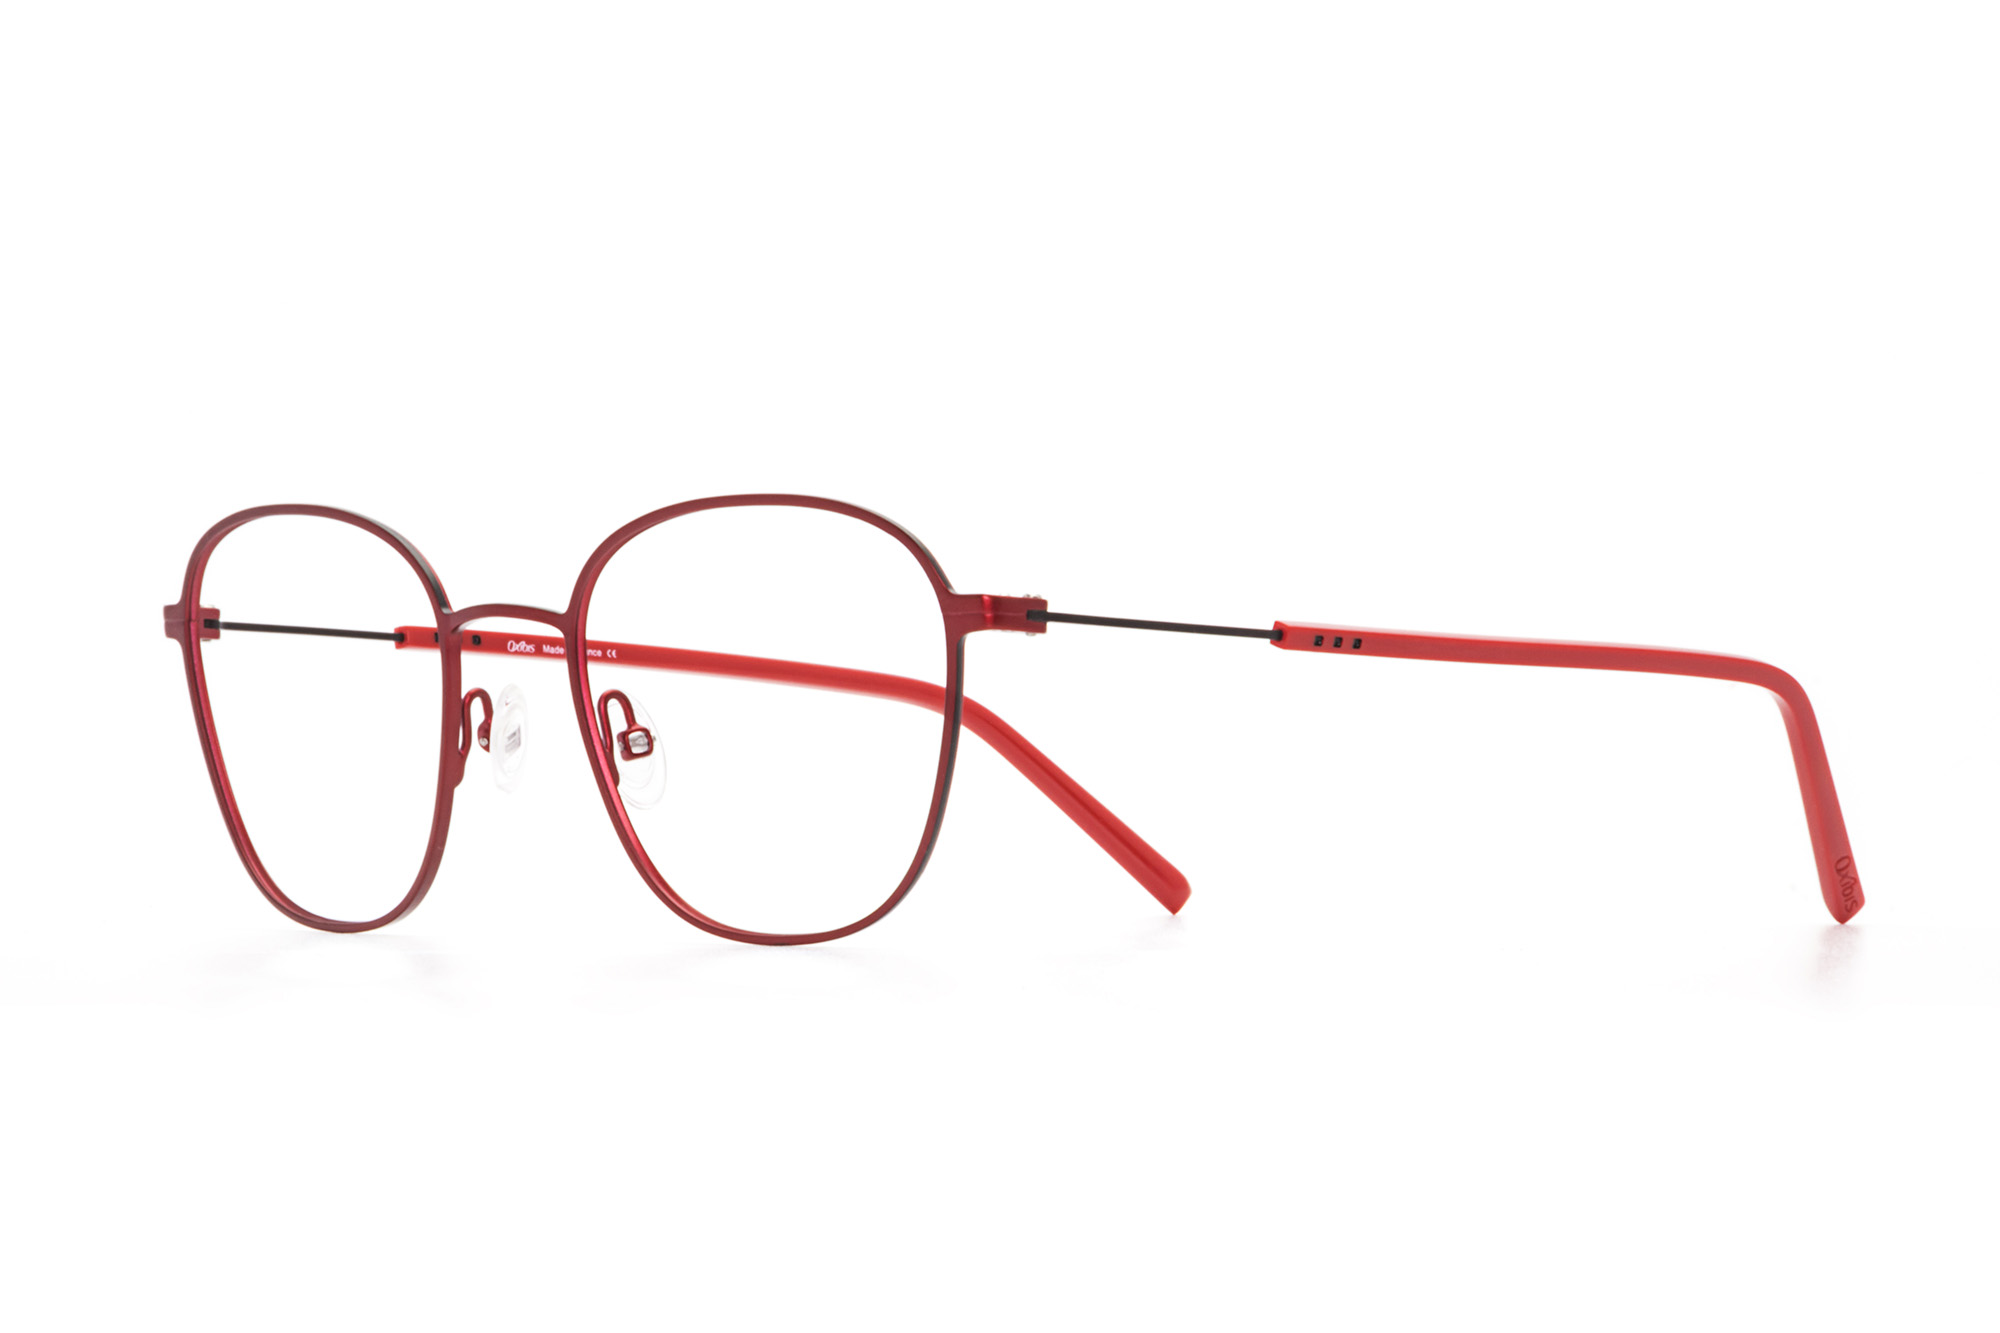 Oxibis Boost 2 BO2C4 50 orta ekartman kırmızı ve siyah renkli dikdörtgen ve yuvarlak model numaralı erkek optik gözlük çerçevesi